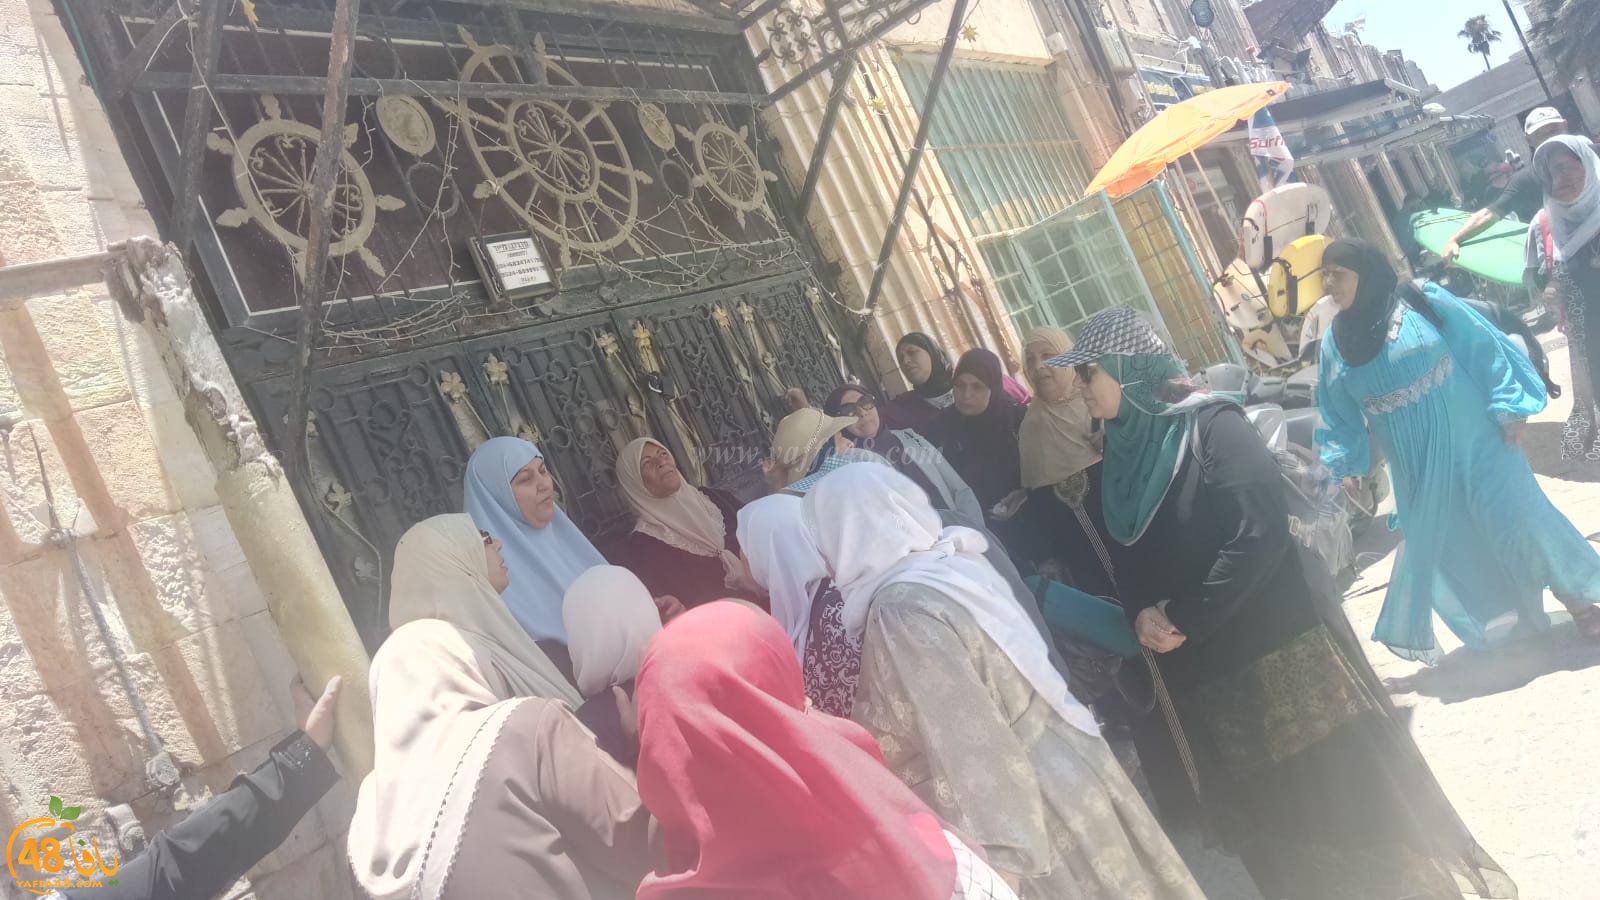   صور: وفد نسائي من قرية المقيبلة شمال البلاد في زيارة لمدينة يافا ومقدساتها